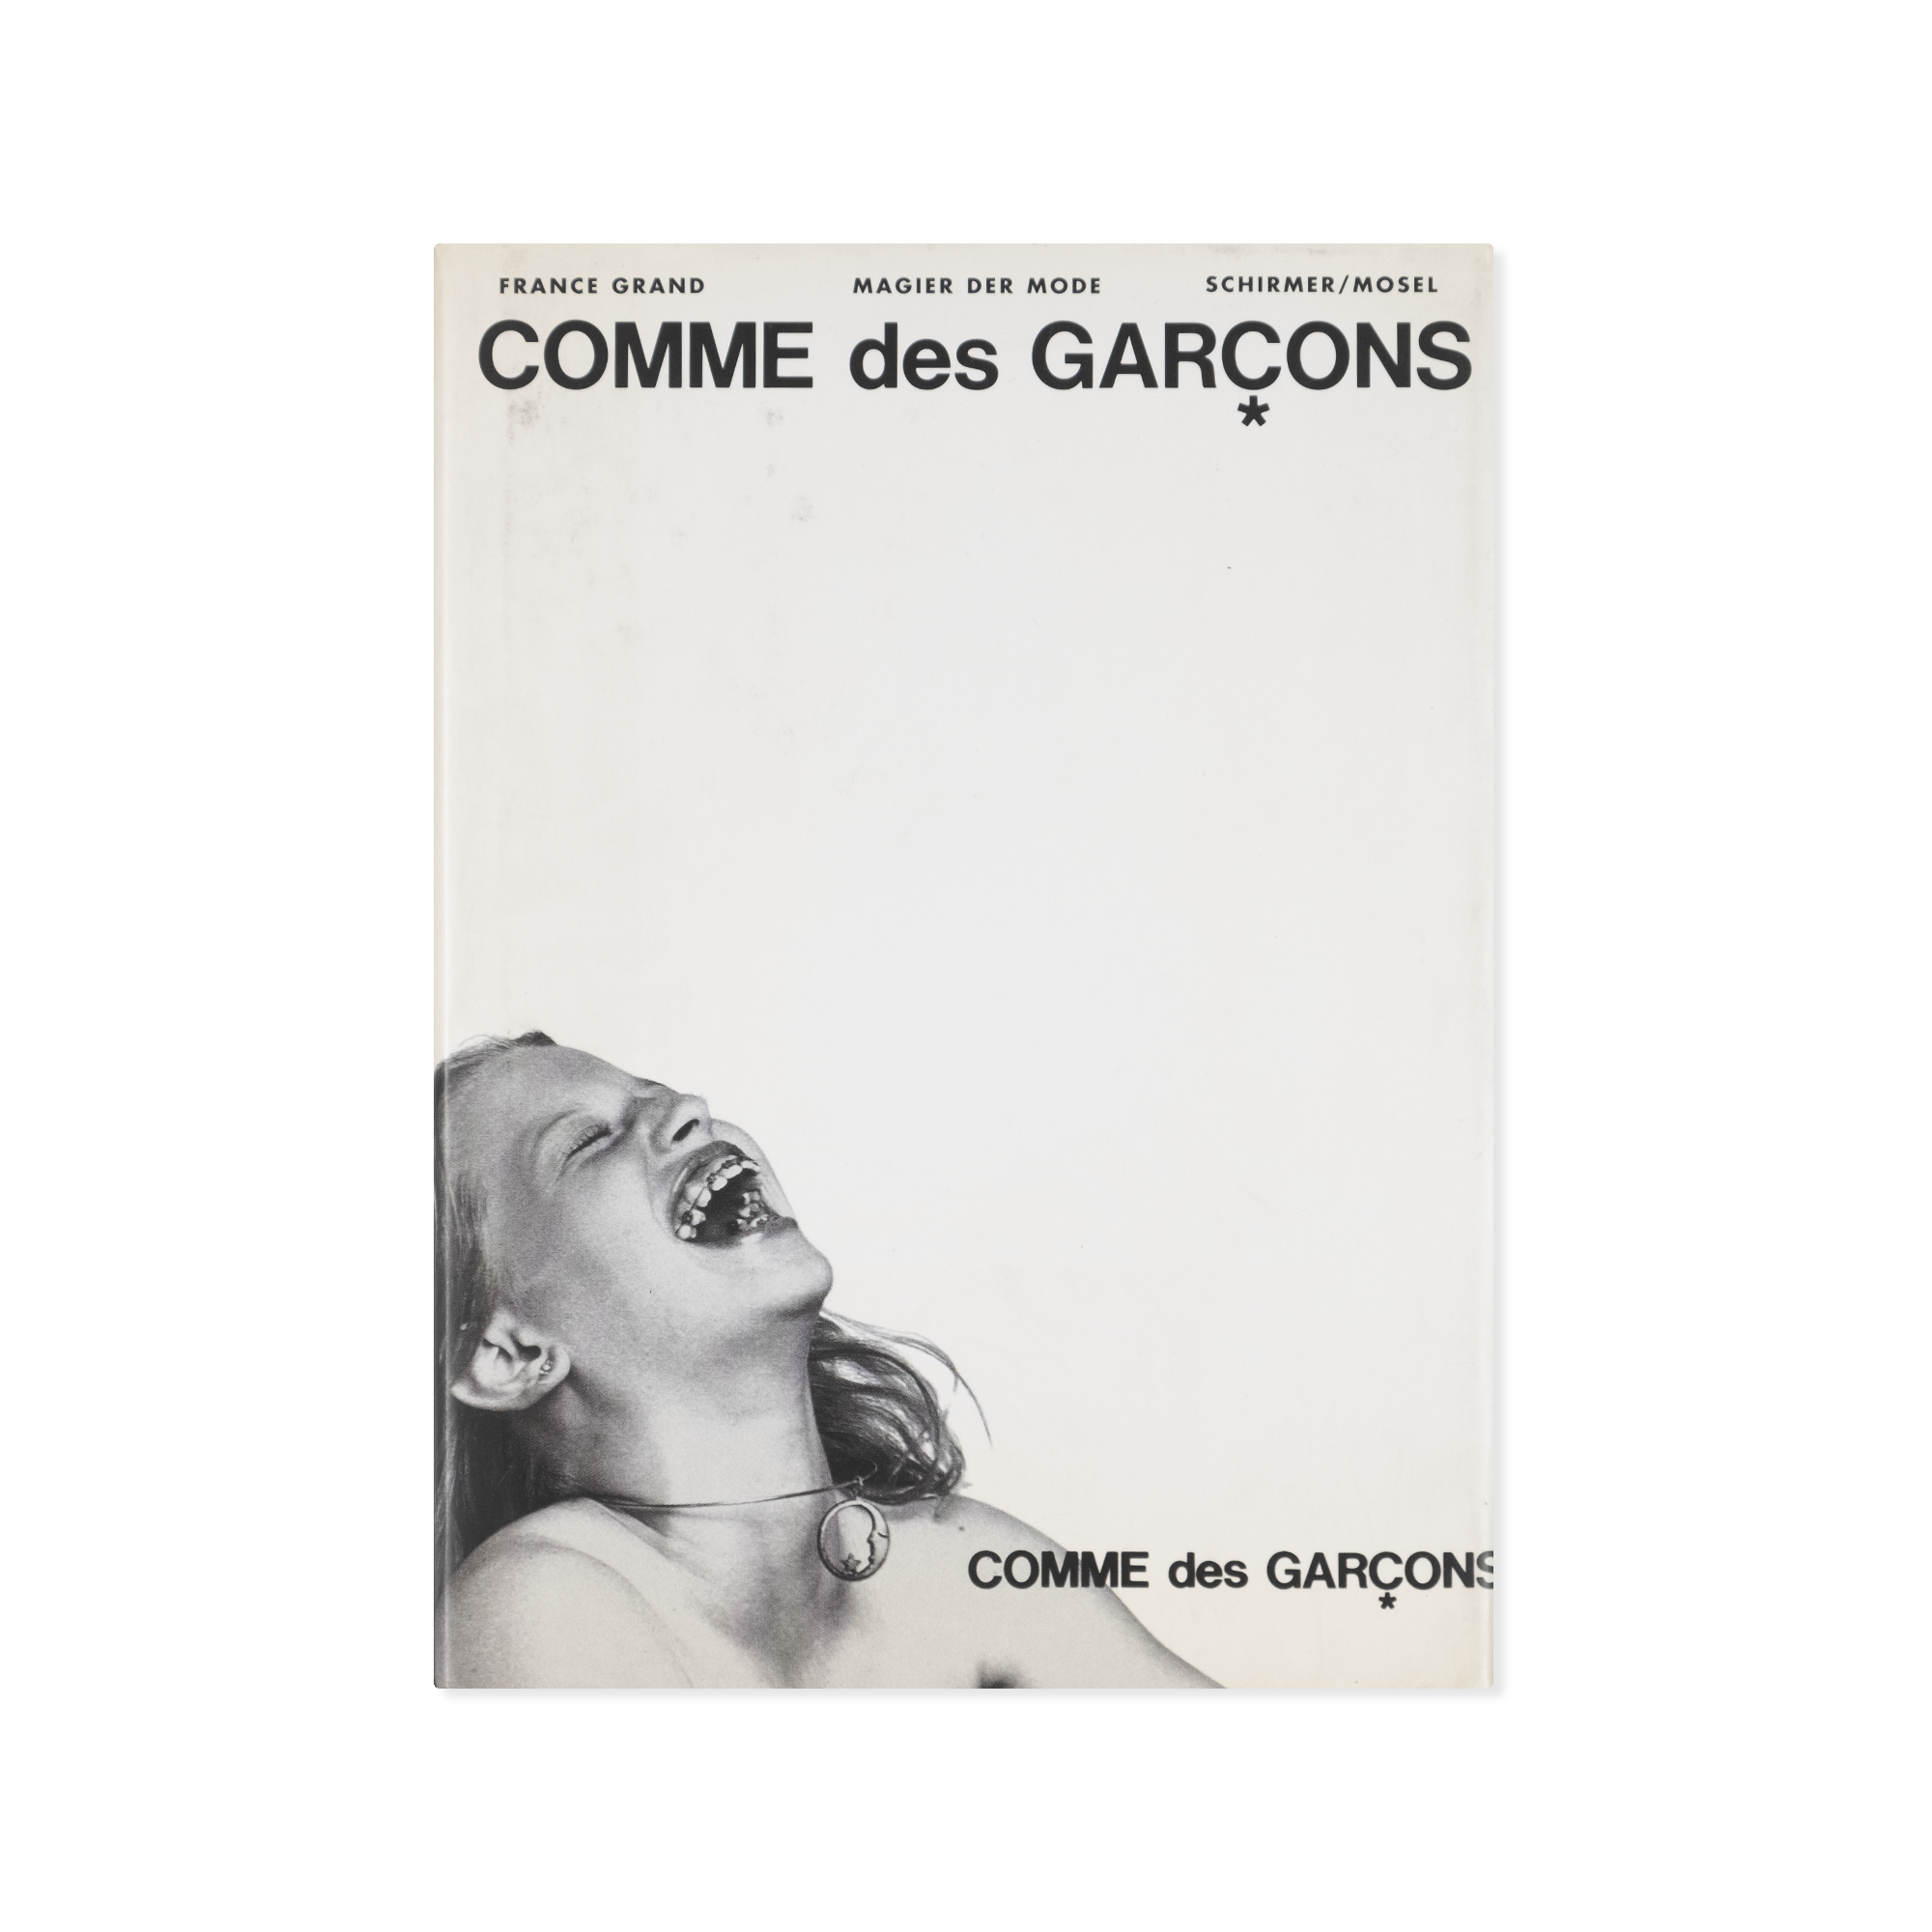 France Grand — COMME des GARÇONS